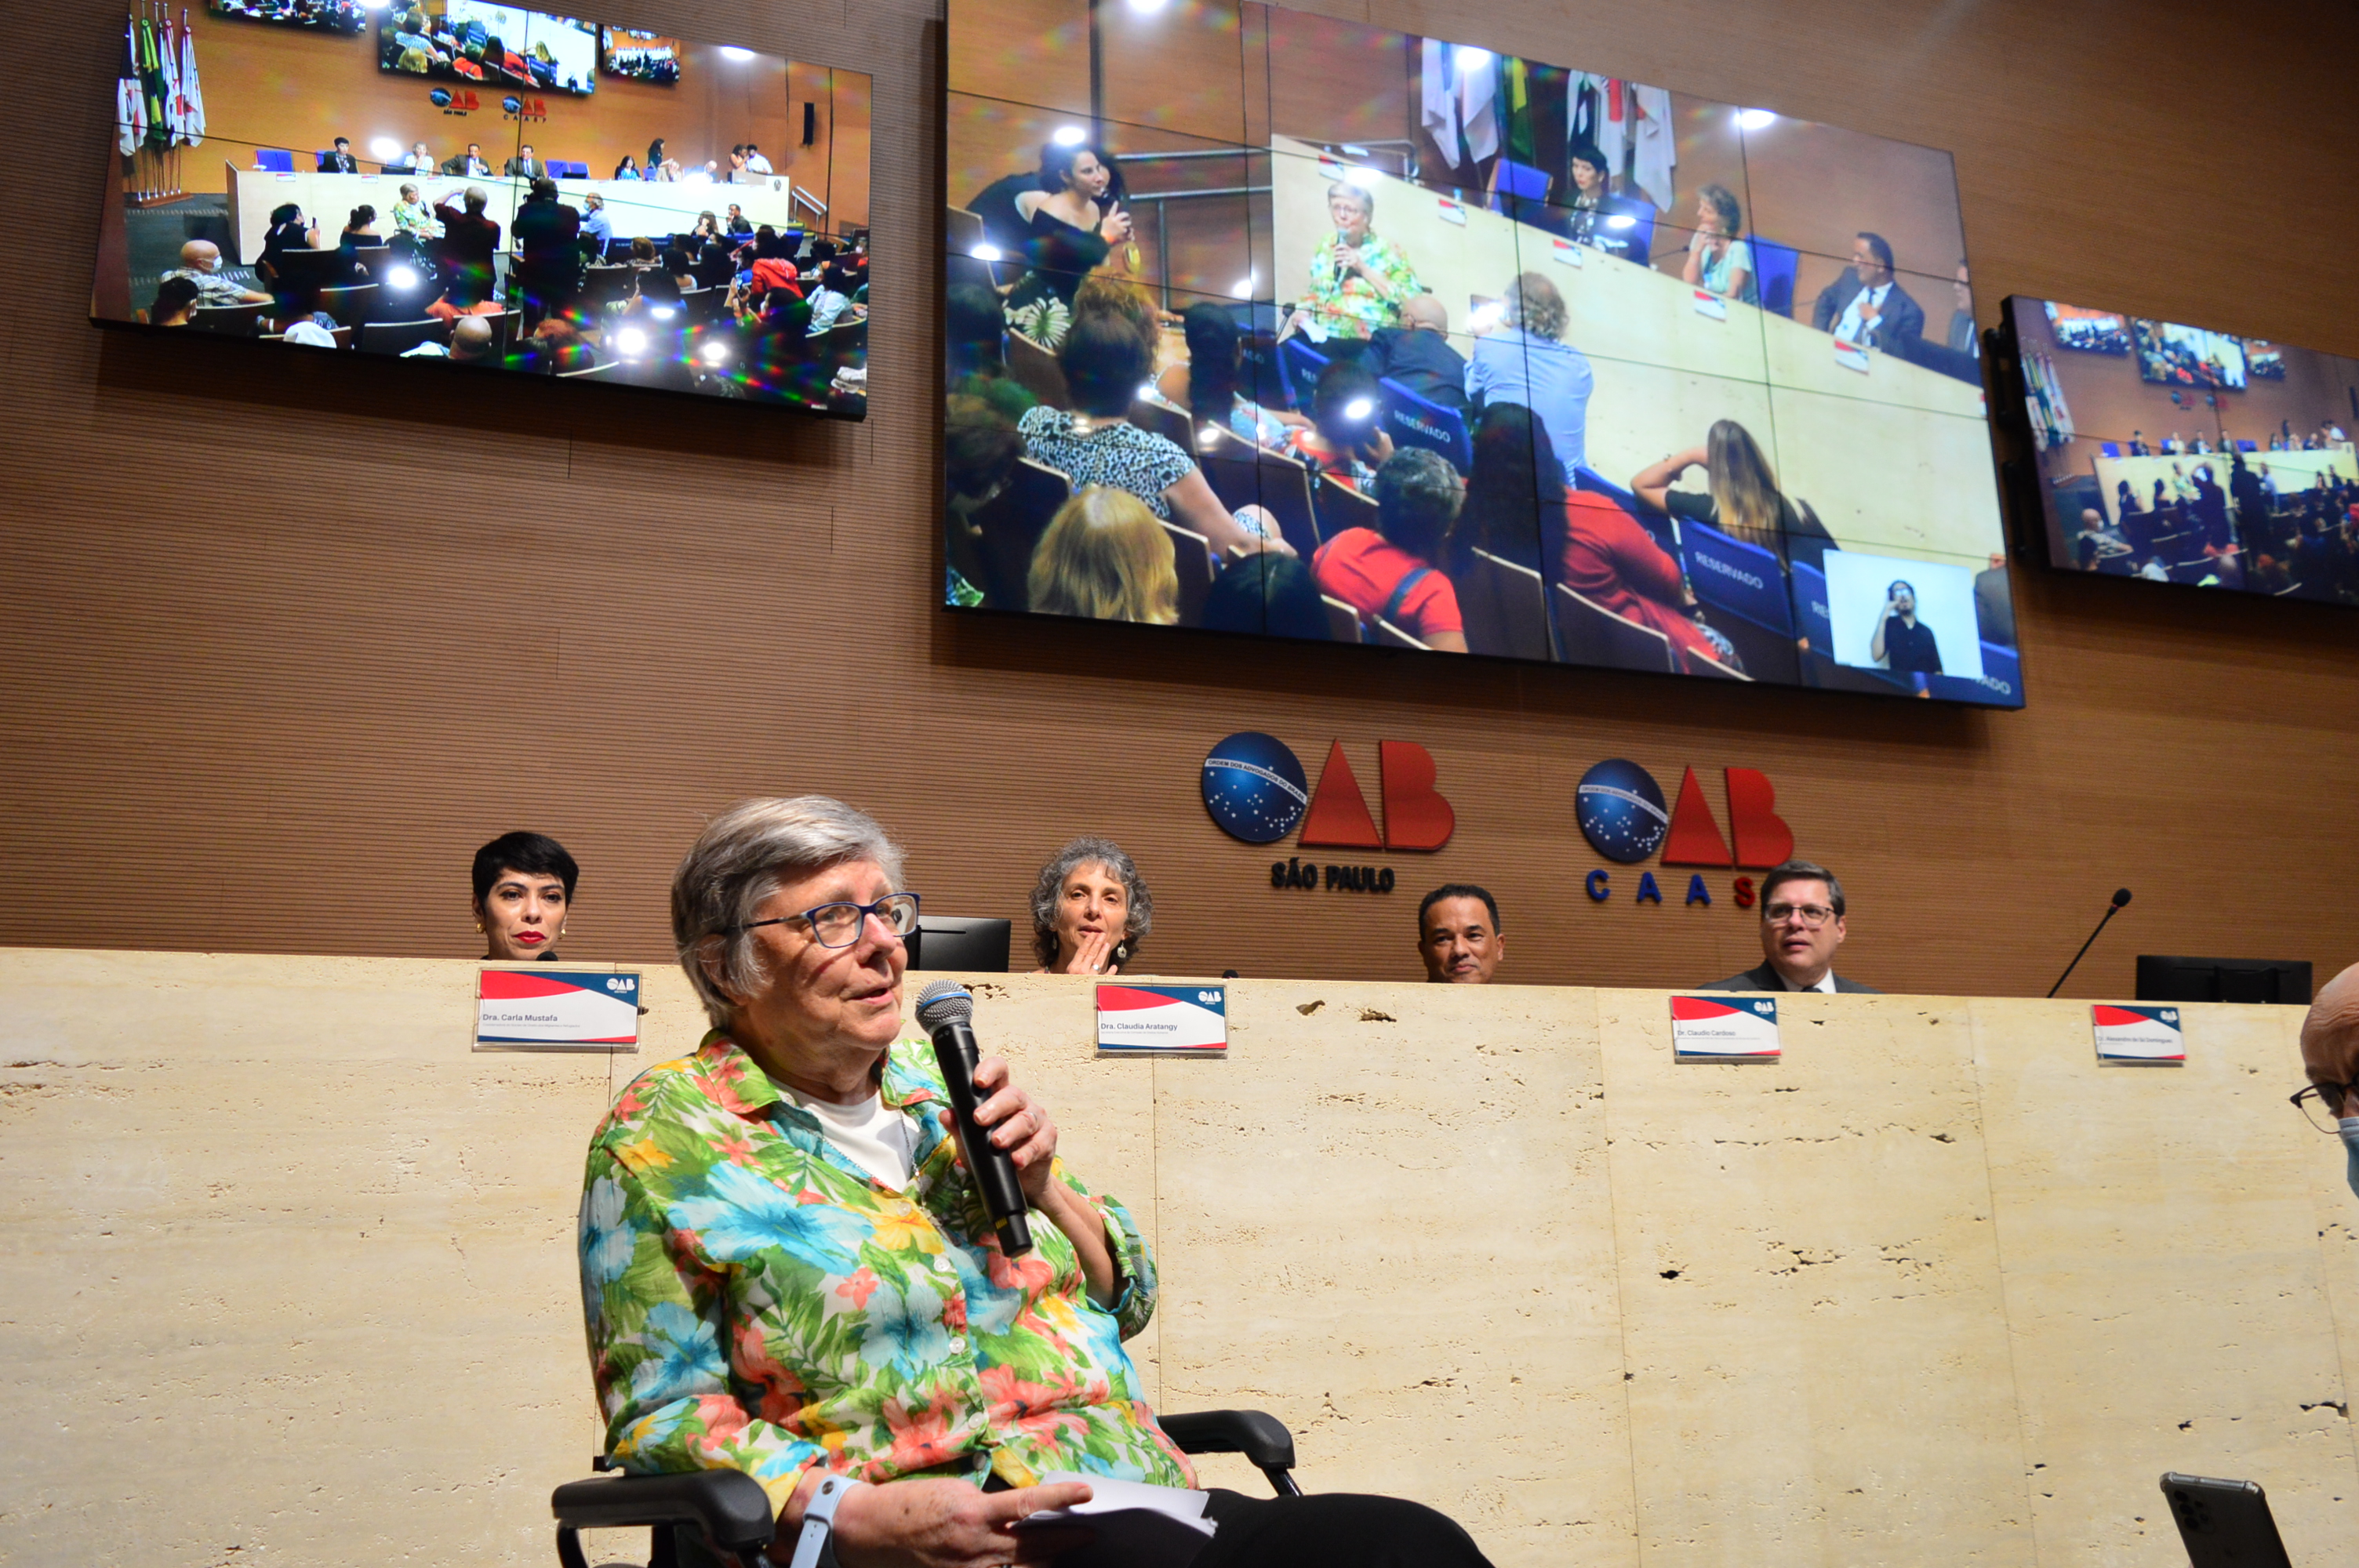 Uma senhora branca de cabelos grisalhos e óculos segurando um microfone discursa. Atrás dela, quatro pessoas sentadas numa mesa e três telões transmitem o evento.